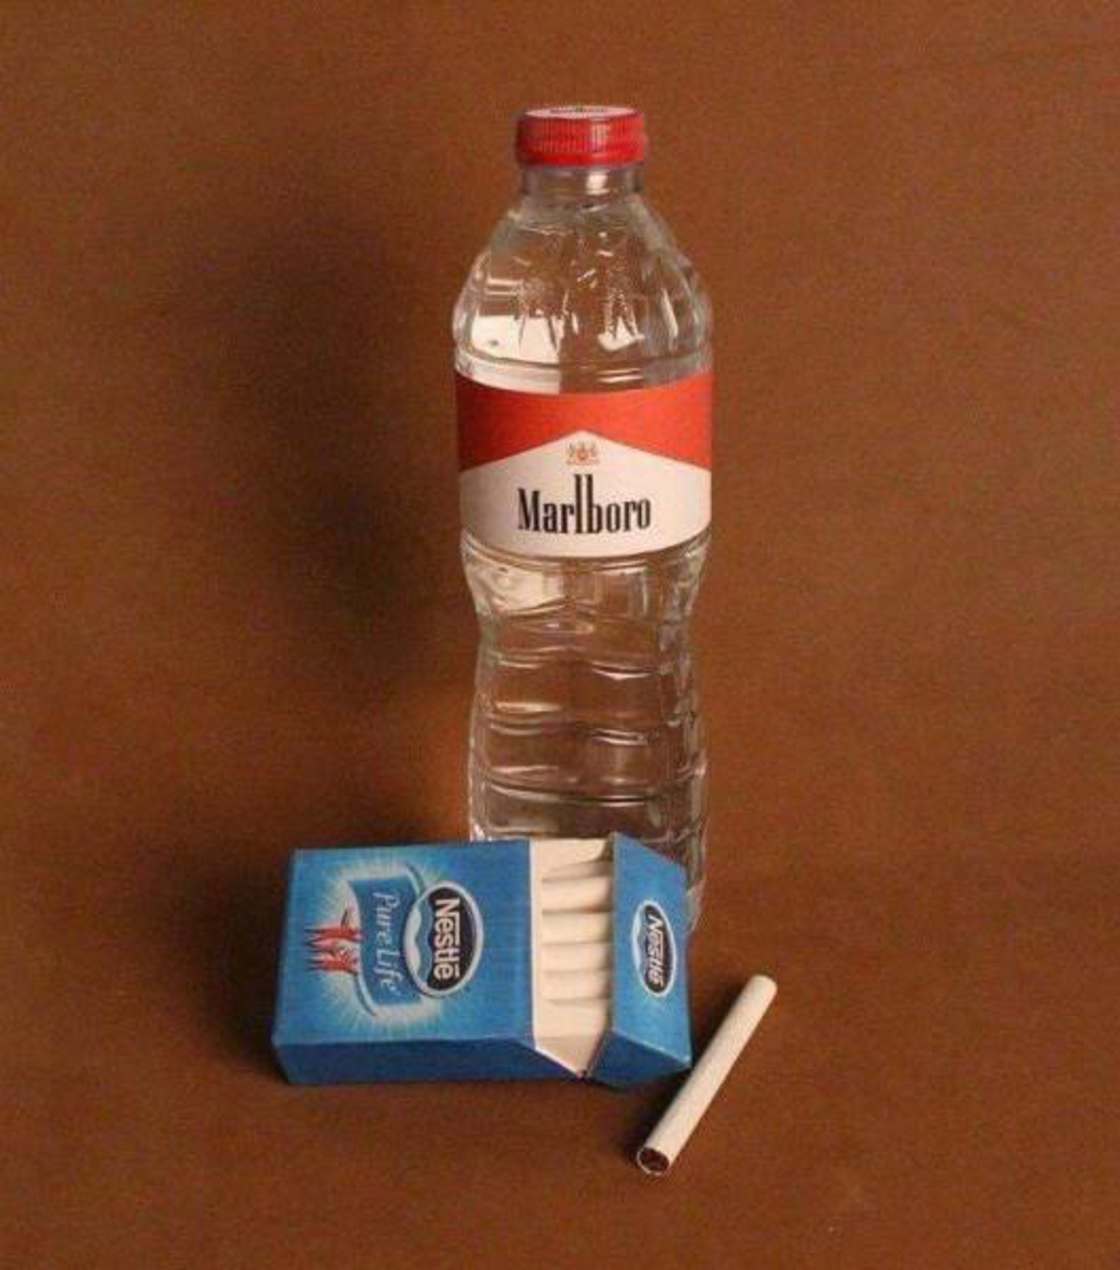 nestle cigarettes - Noster Marlboro Nestle Pure Life